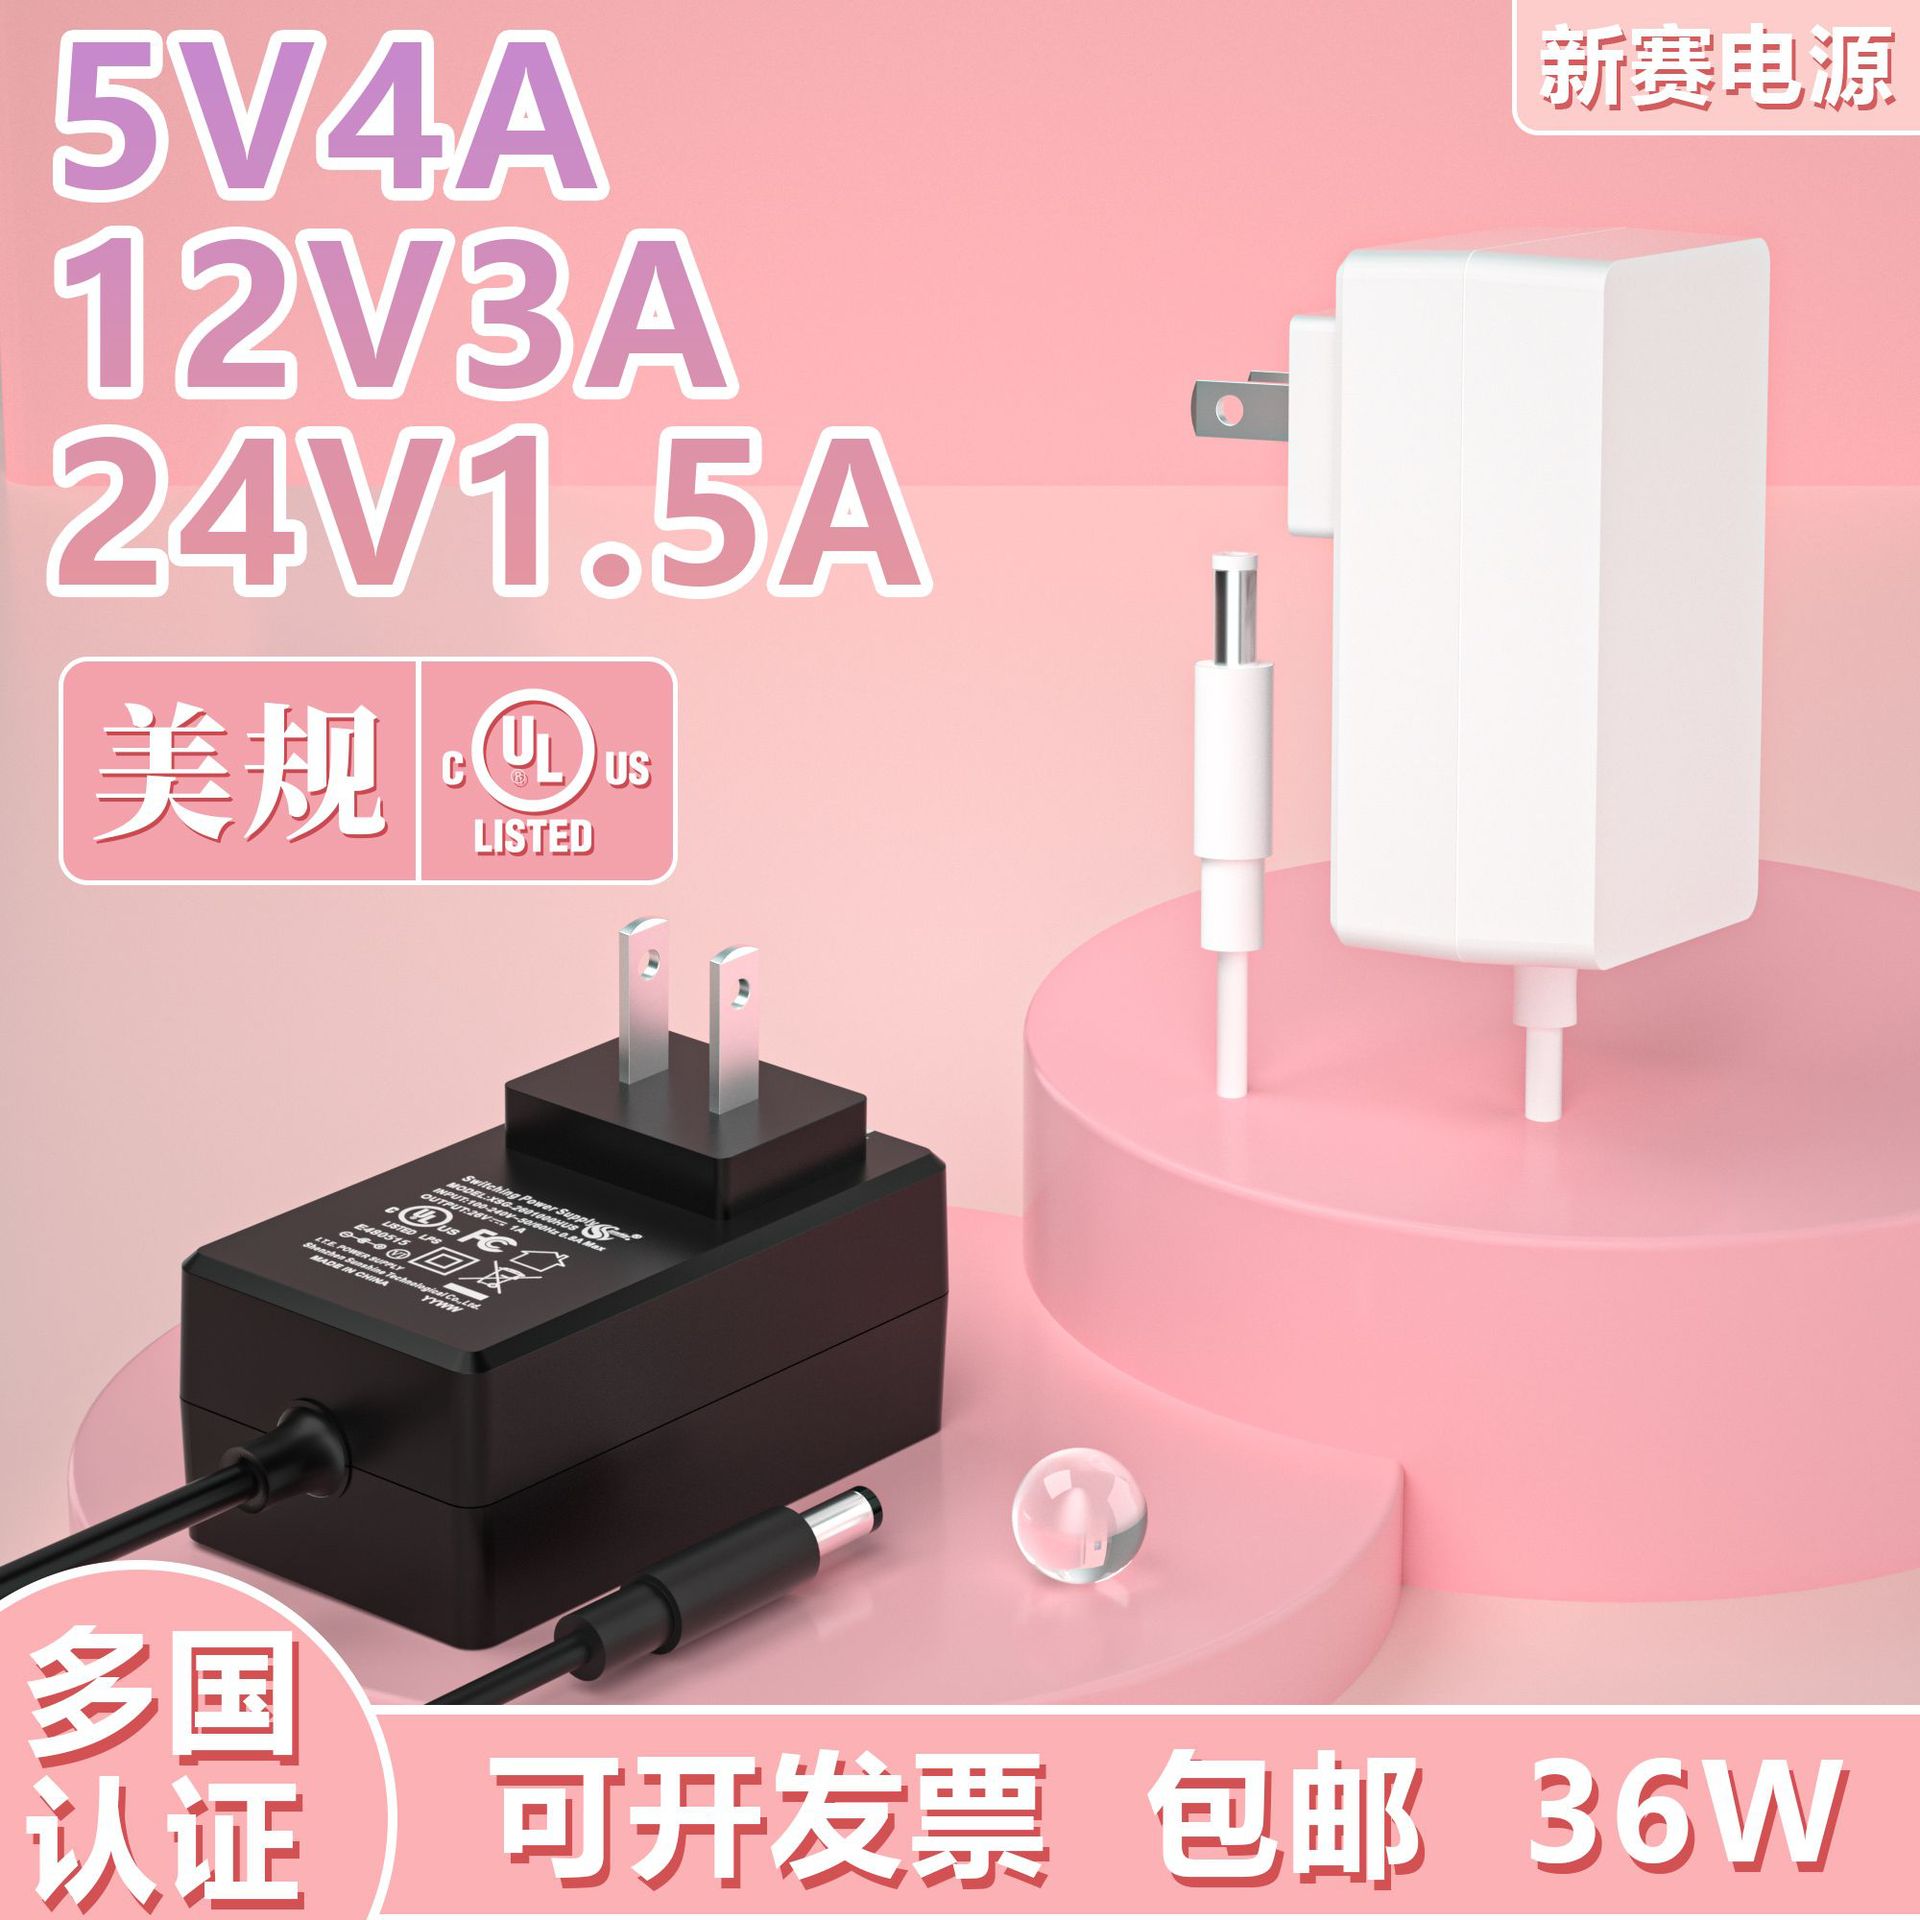 24v1.5a电源适配器中日美规认证插墙式5V4A充电器12V3A电源适配器